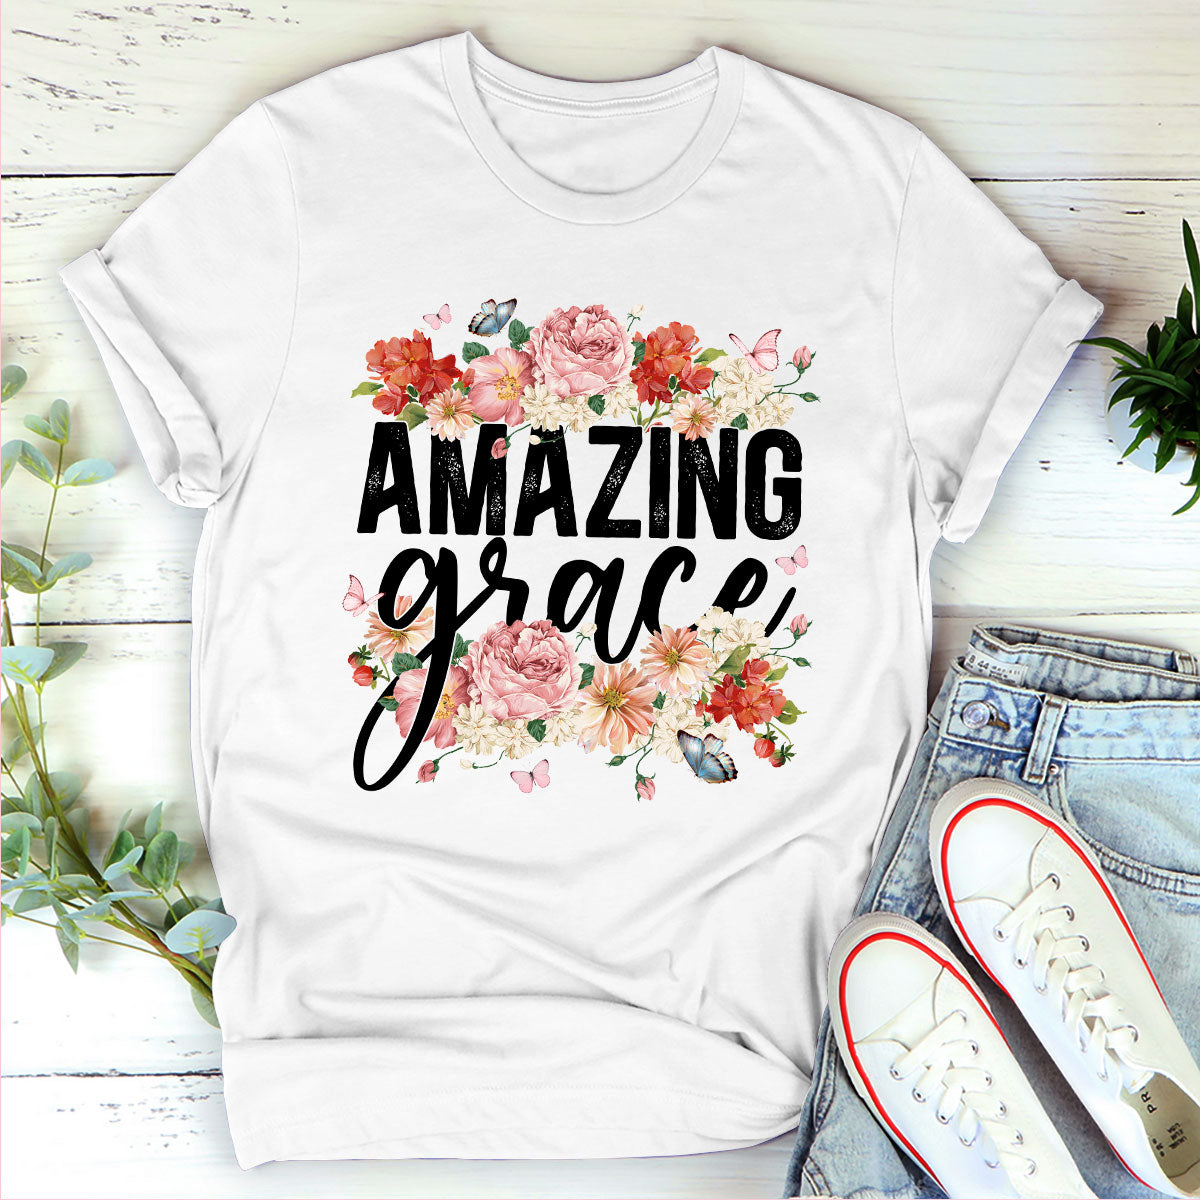 13 Best Floral print shirt ideas